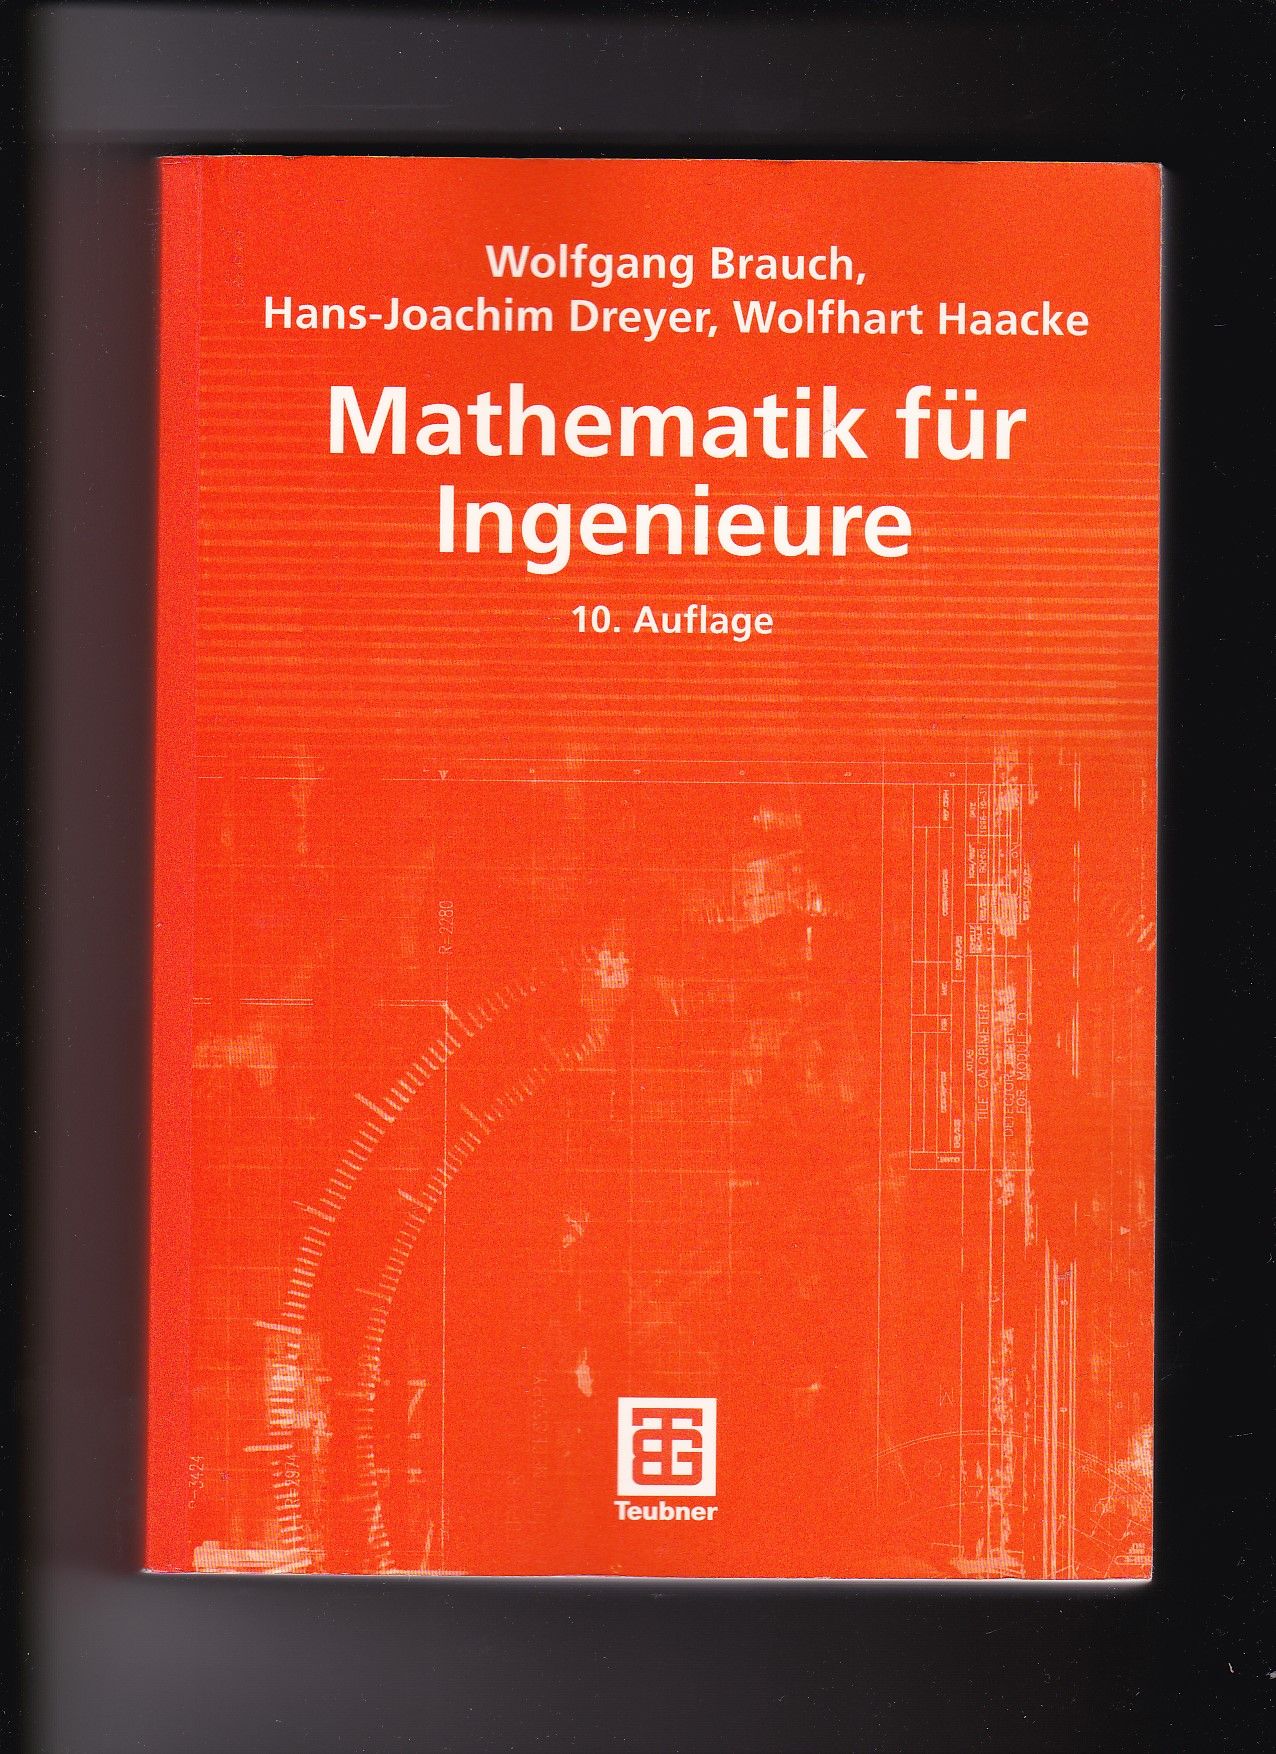 Wolfgang Brauch, Hans-Joachim Dreyer, Mathematik für Ingenieure / 10. Auflage - Brauch, Wolfgang (Verfasser), Hans-Joachim (Verfasser) Dreyer und Wolfhart (Verfasser) Haacke